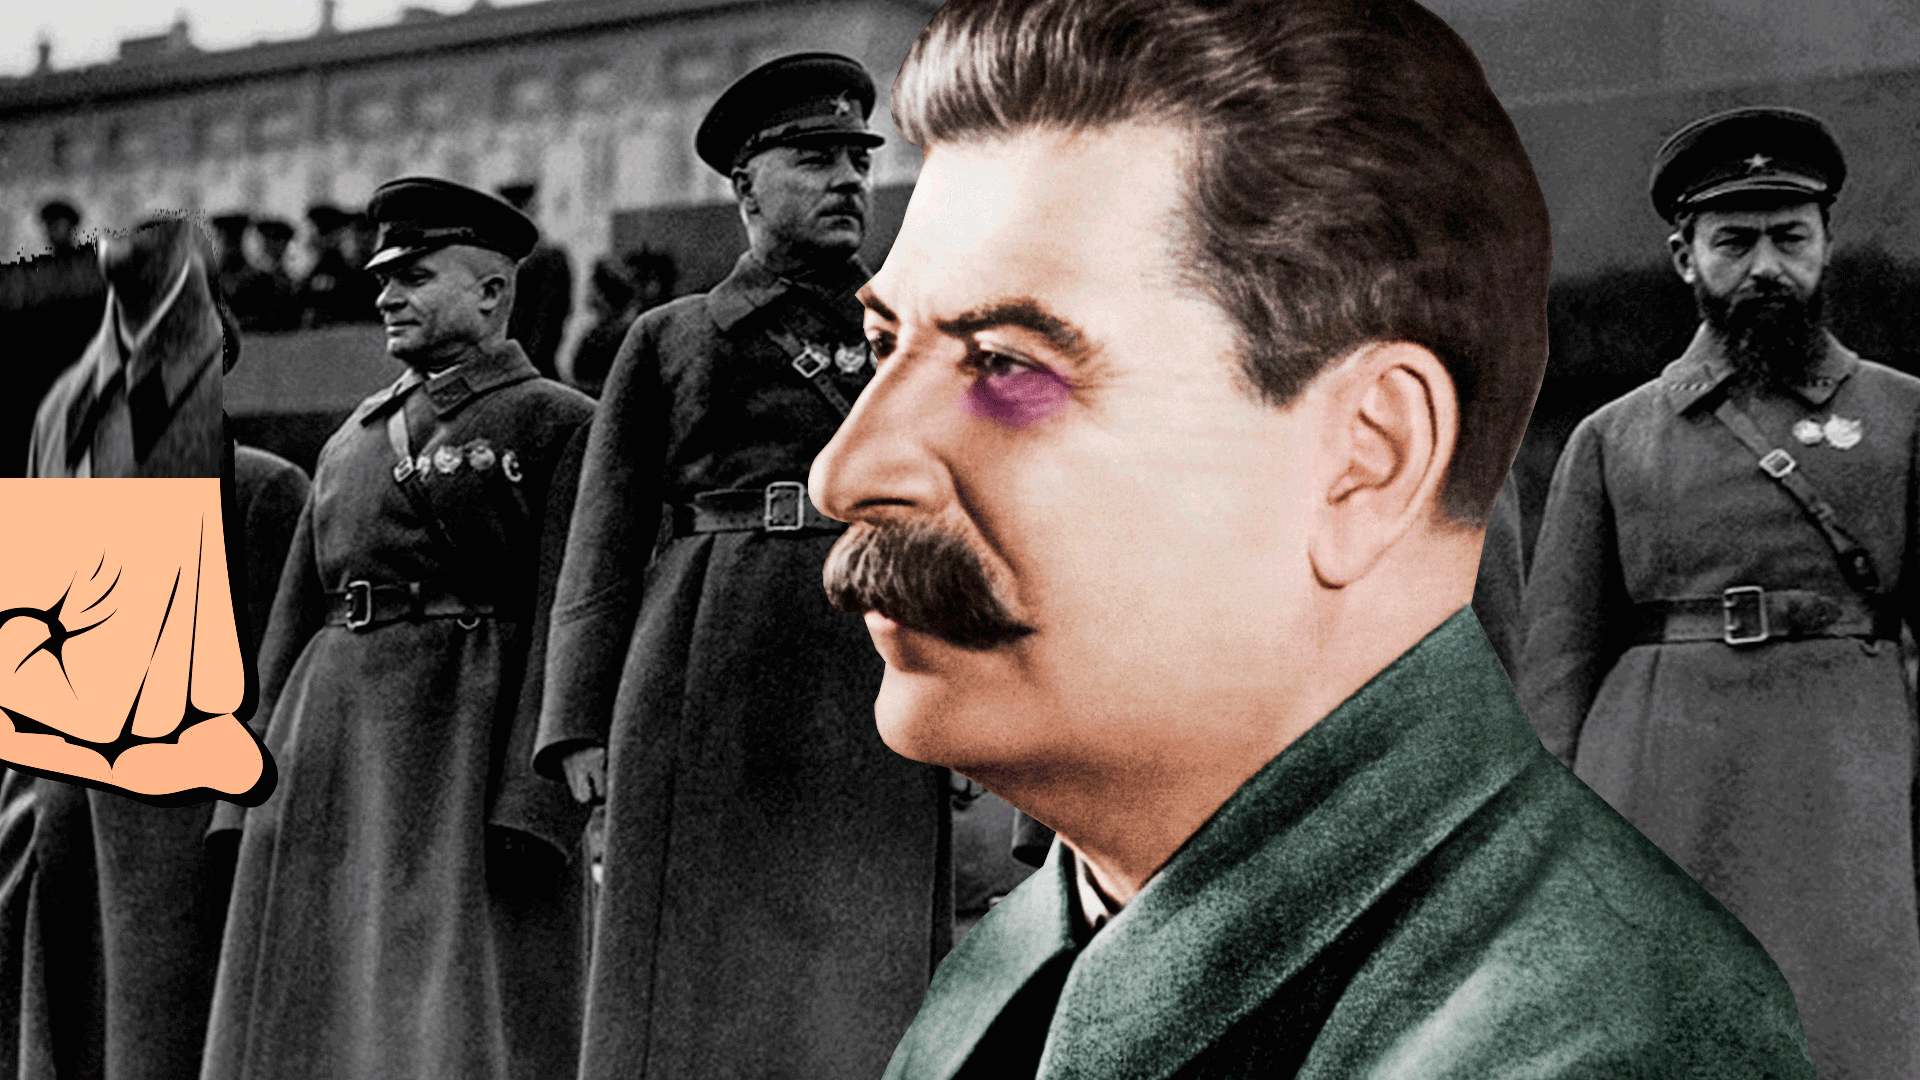 Сталин Иосиф Виссарионович